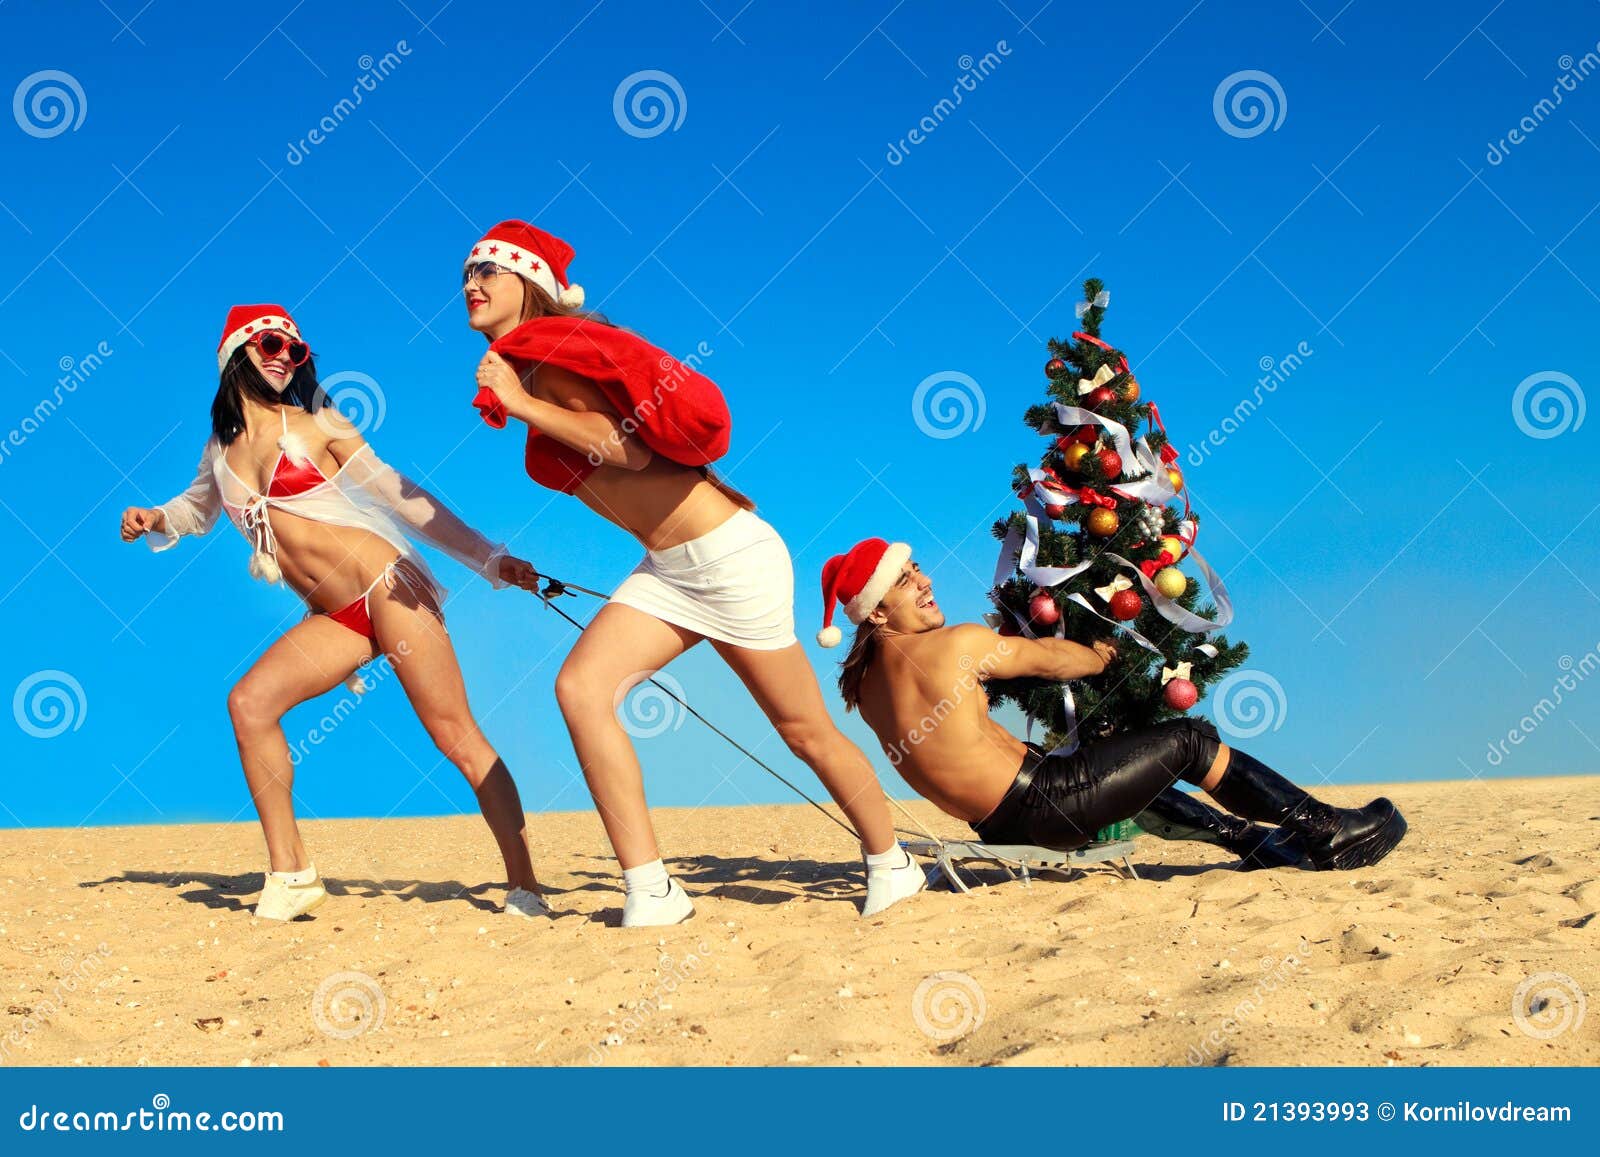 Strand som drar santa sexiga santas. Sätta på land julbegreppsgyckel som drar tropisk vinter två santa santas för den sexiga sledtreen